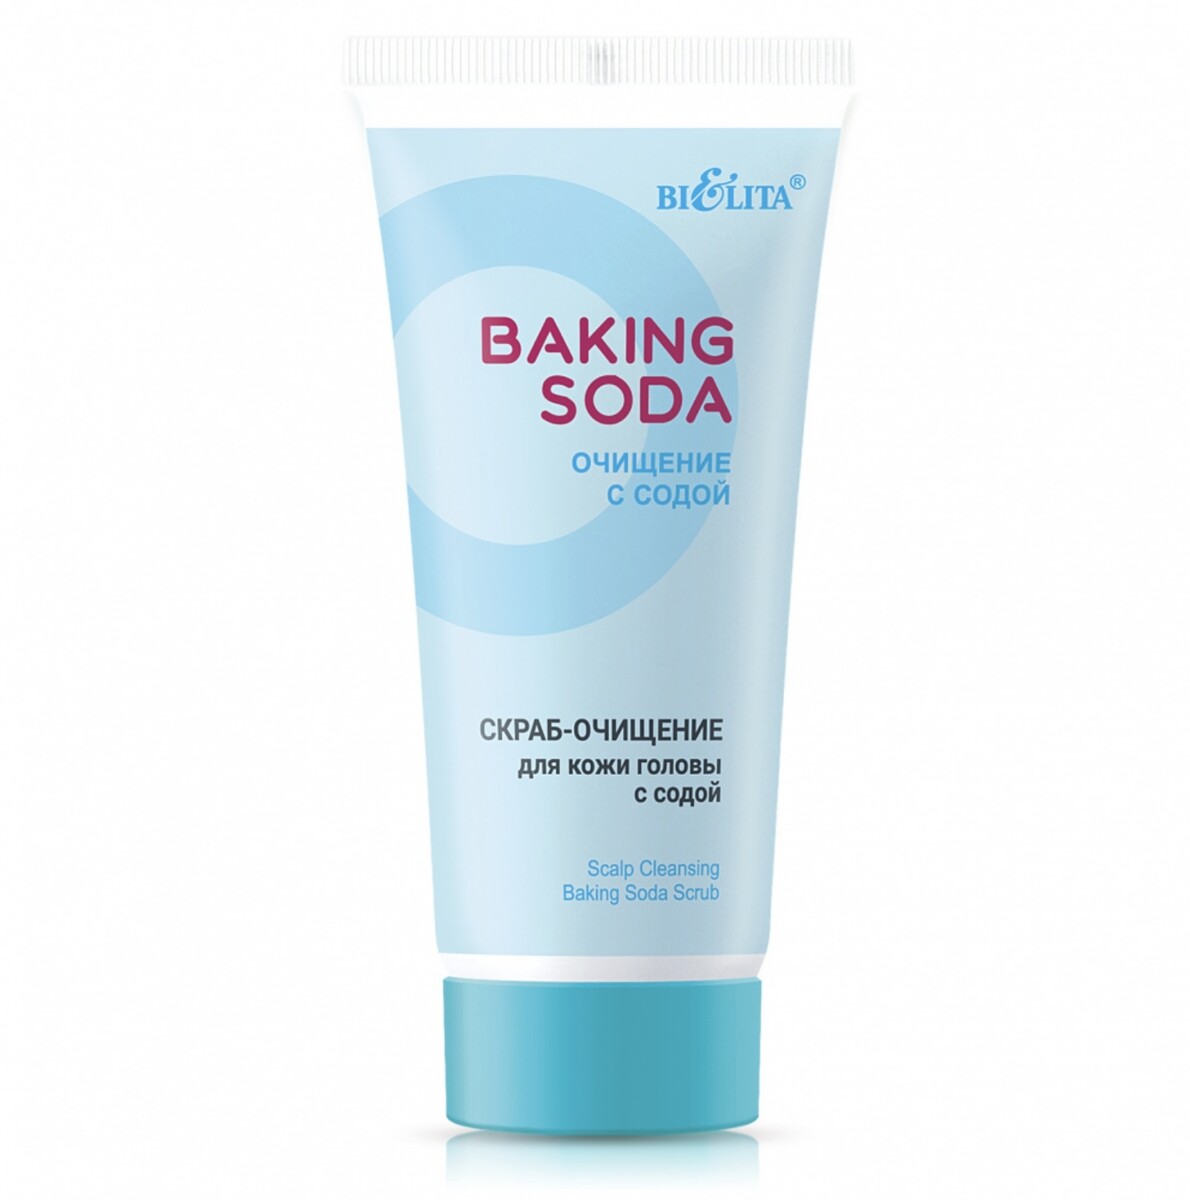 Baking Soda Скраб-очищение для кожи головы с содой 150мл